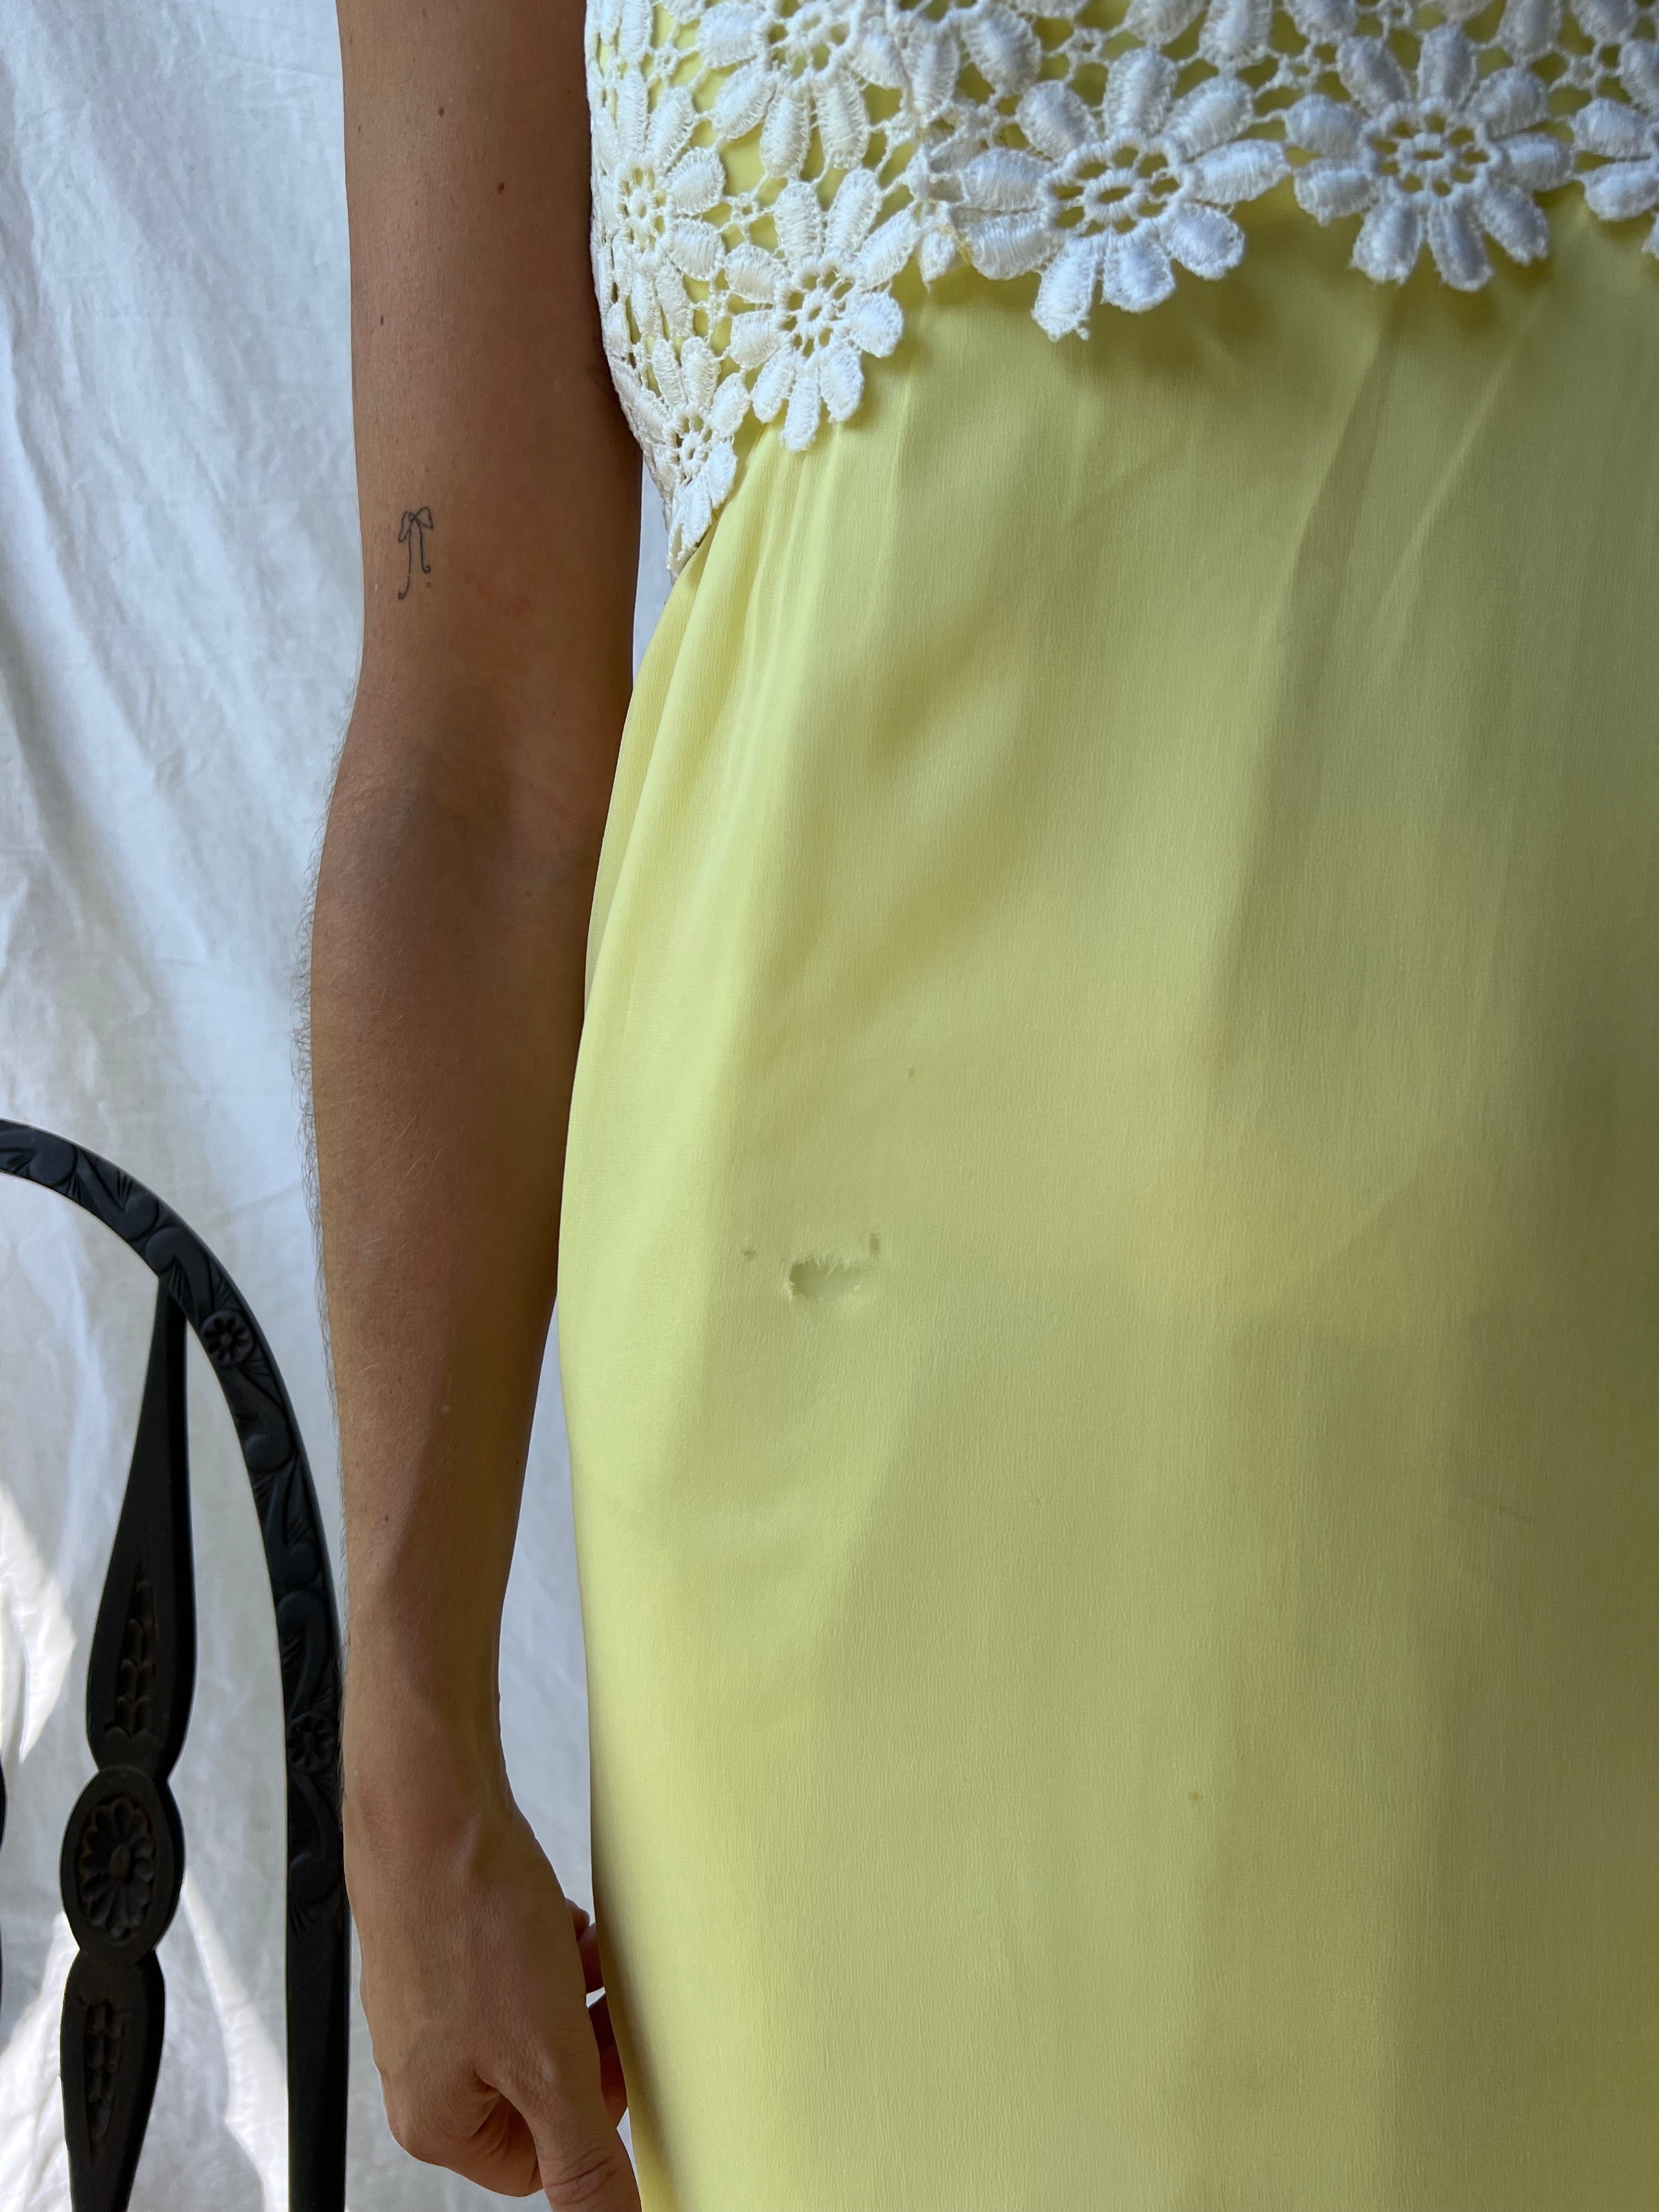 Lemon Yellow Daisy Long Dress